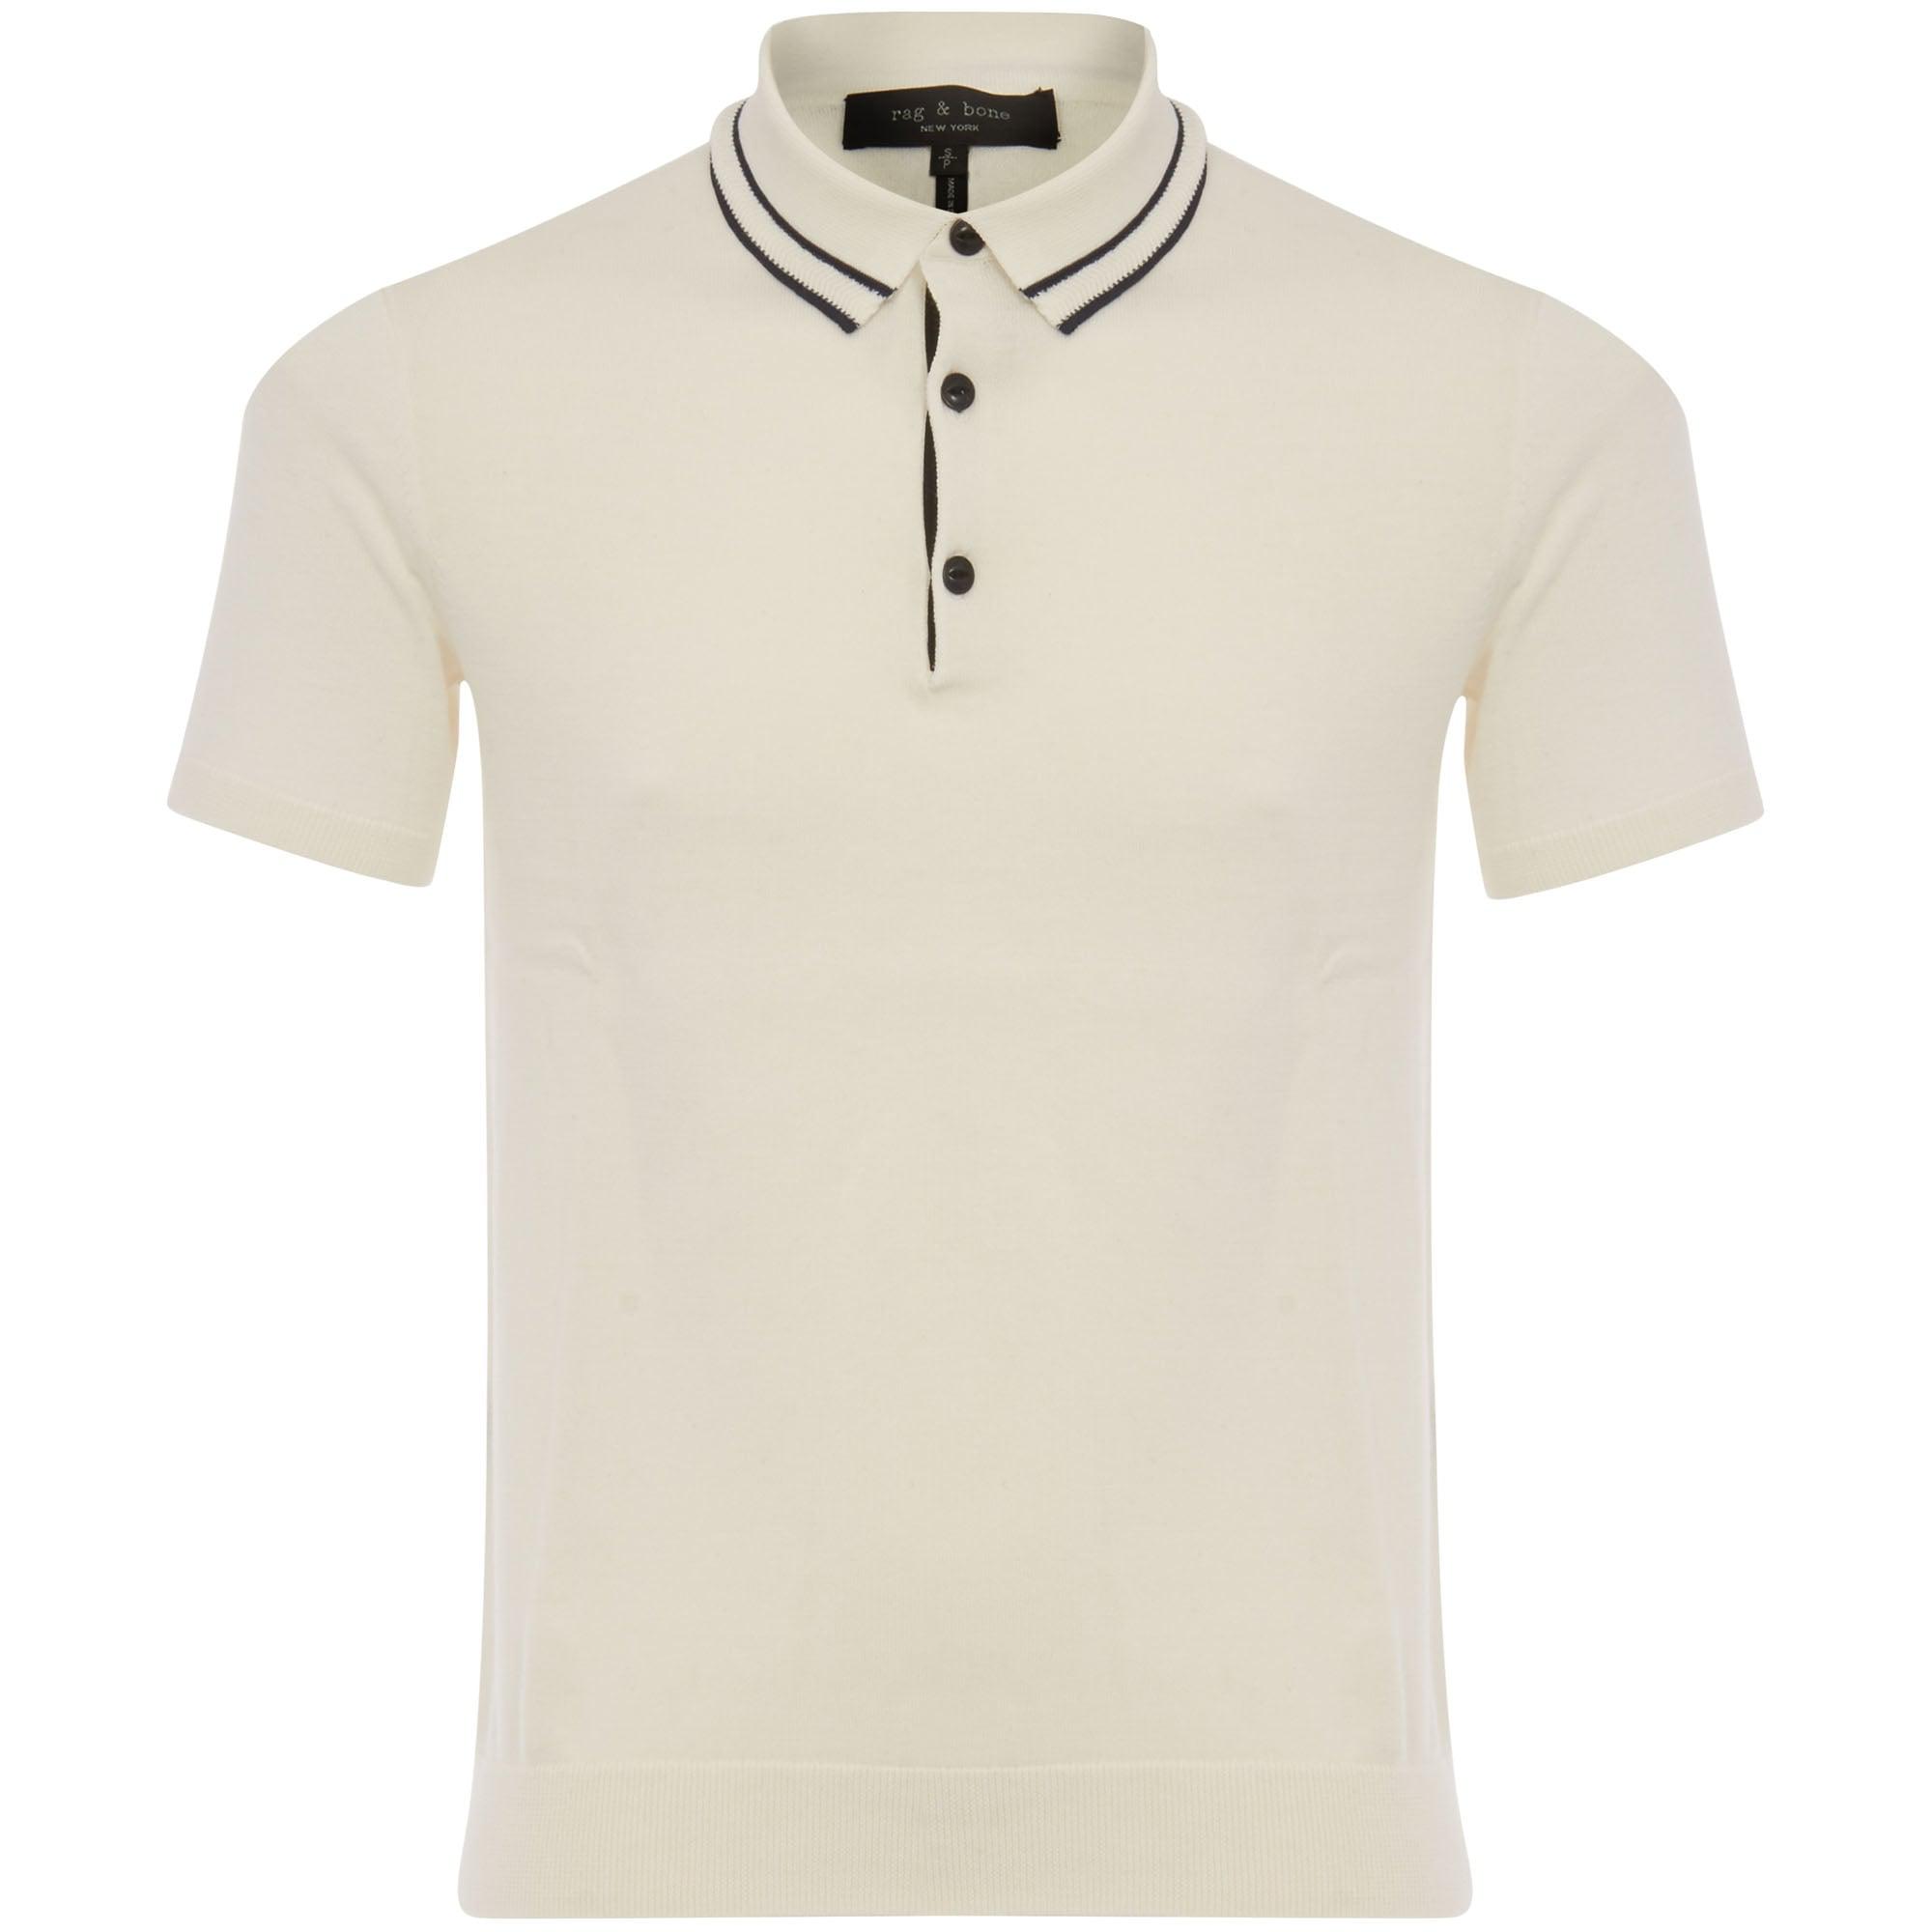 Lyst - Rag & Bone Jason Polo Shirt - Ivory in White for Men